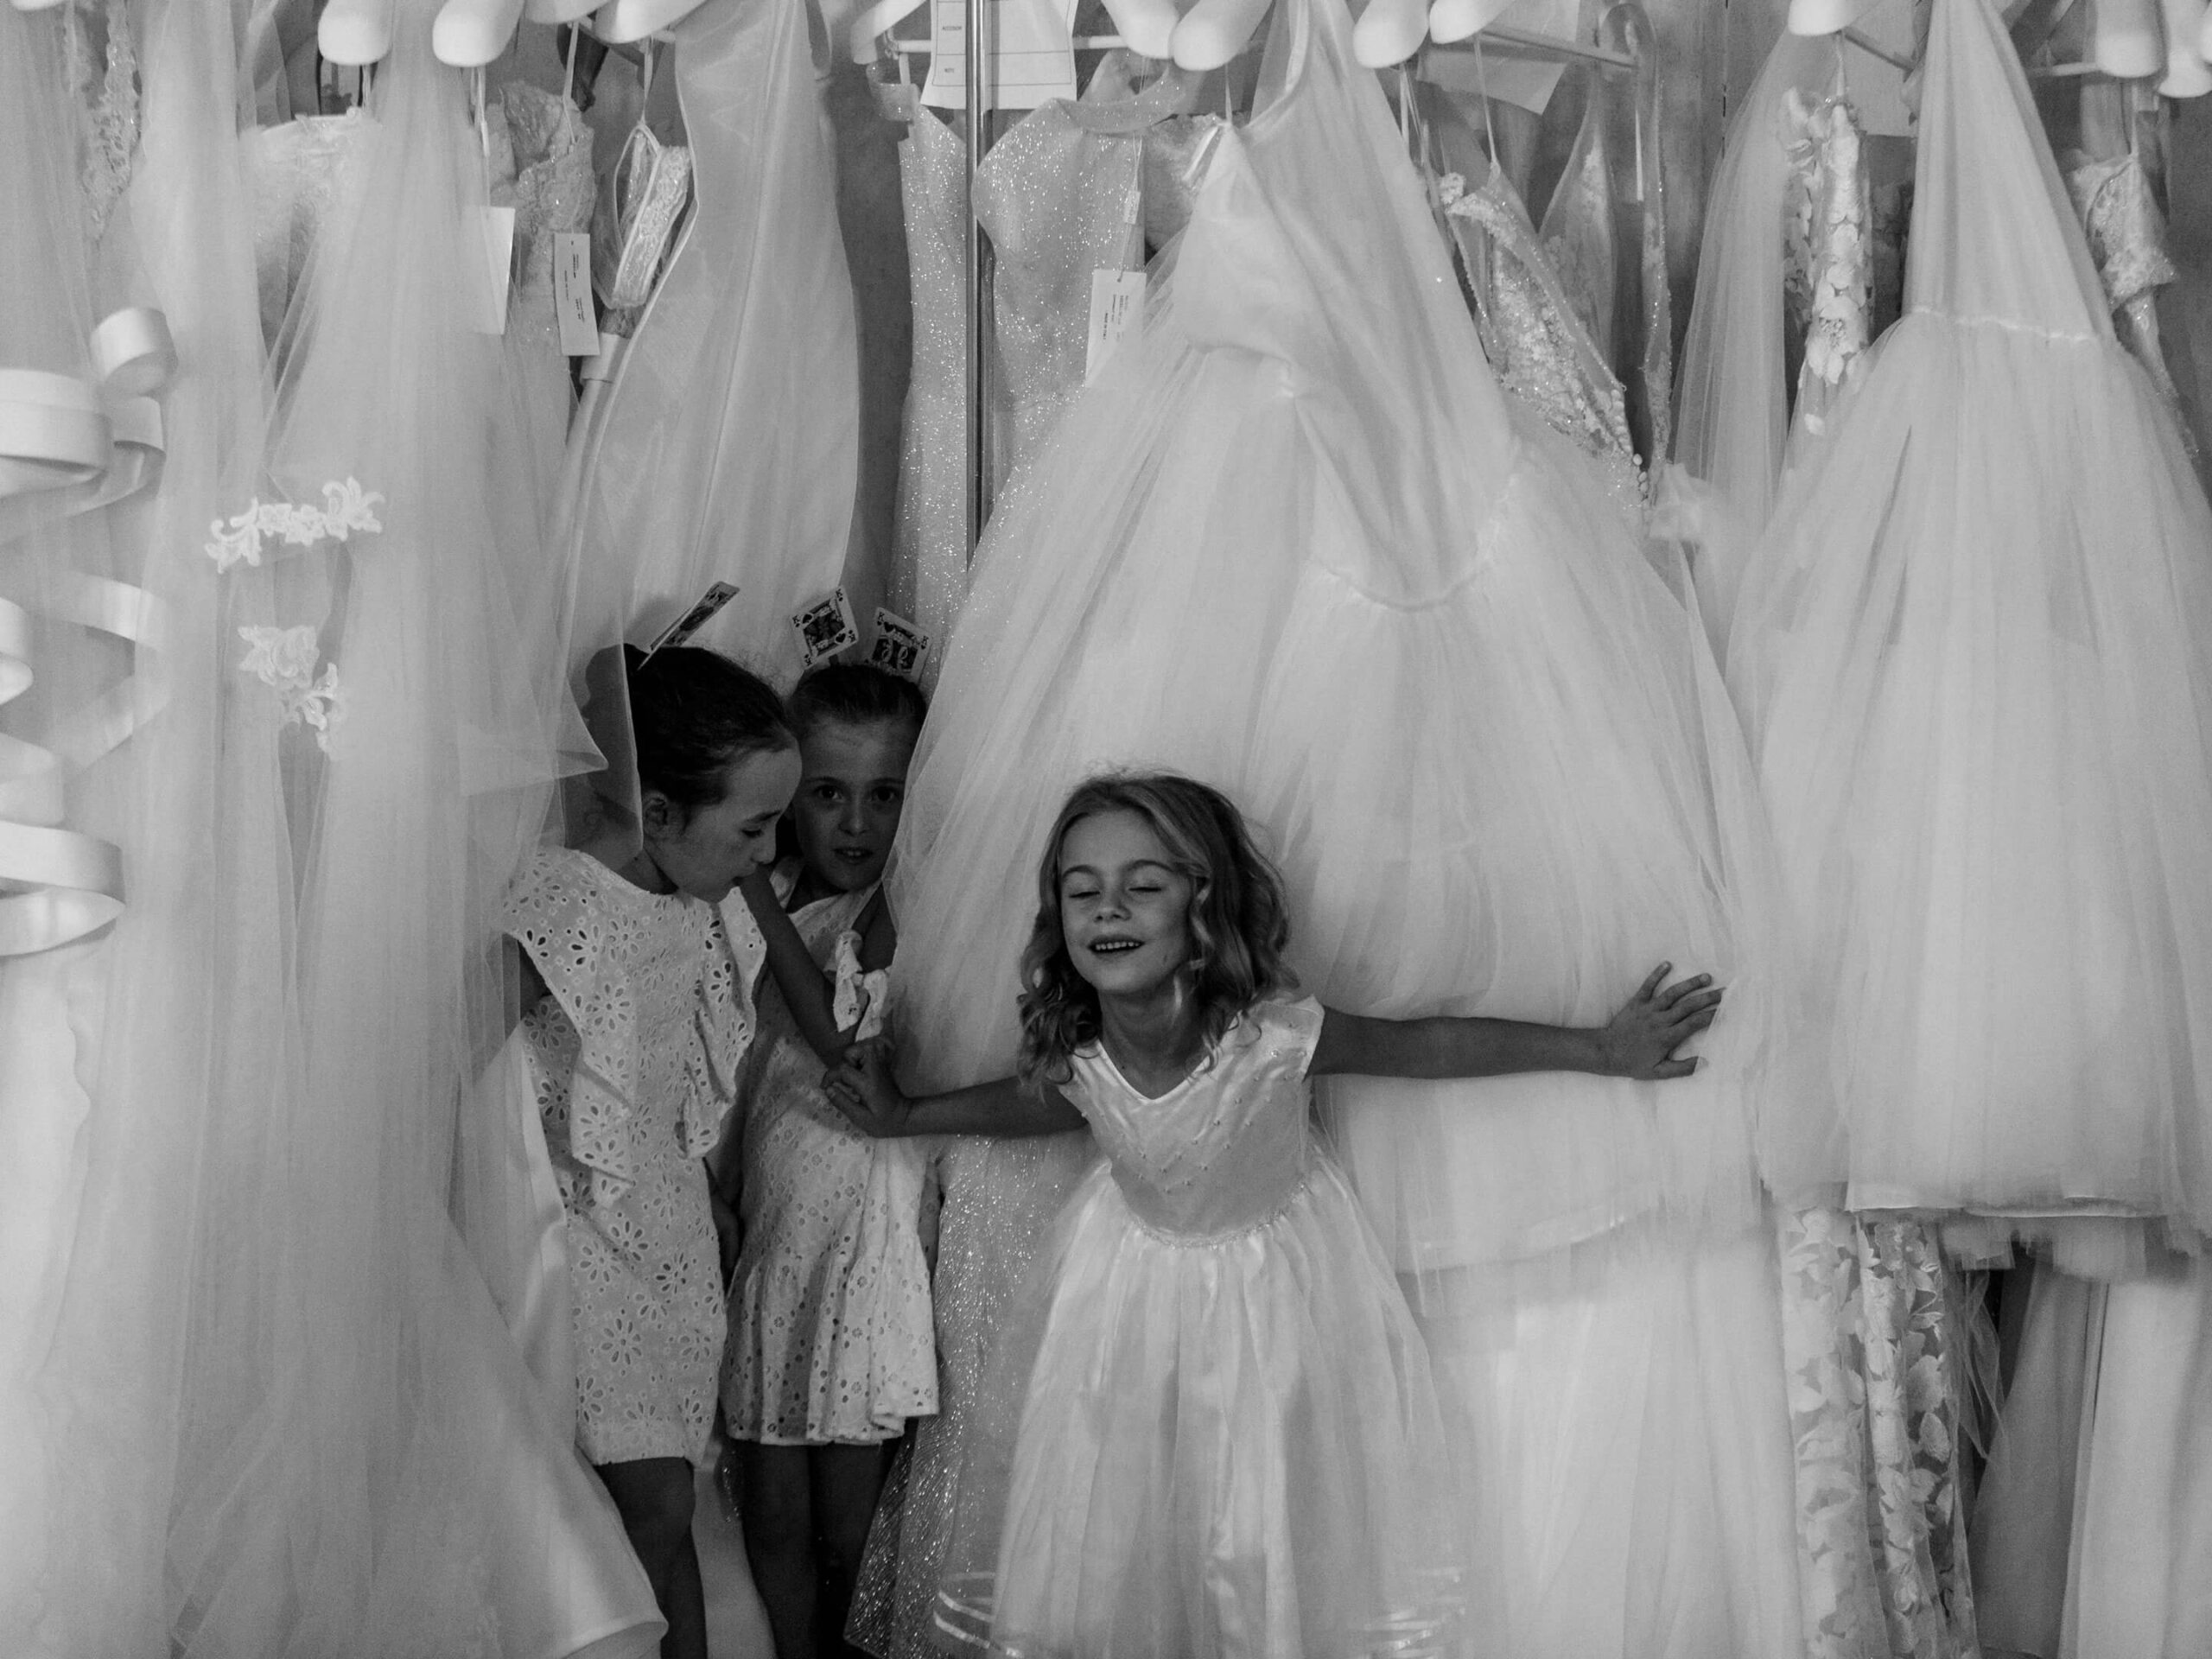 bambine giocano tra gli abiti da sposa